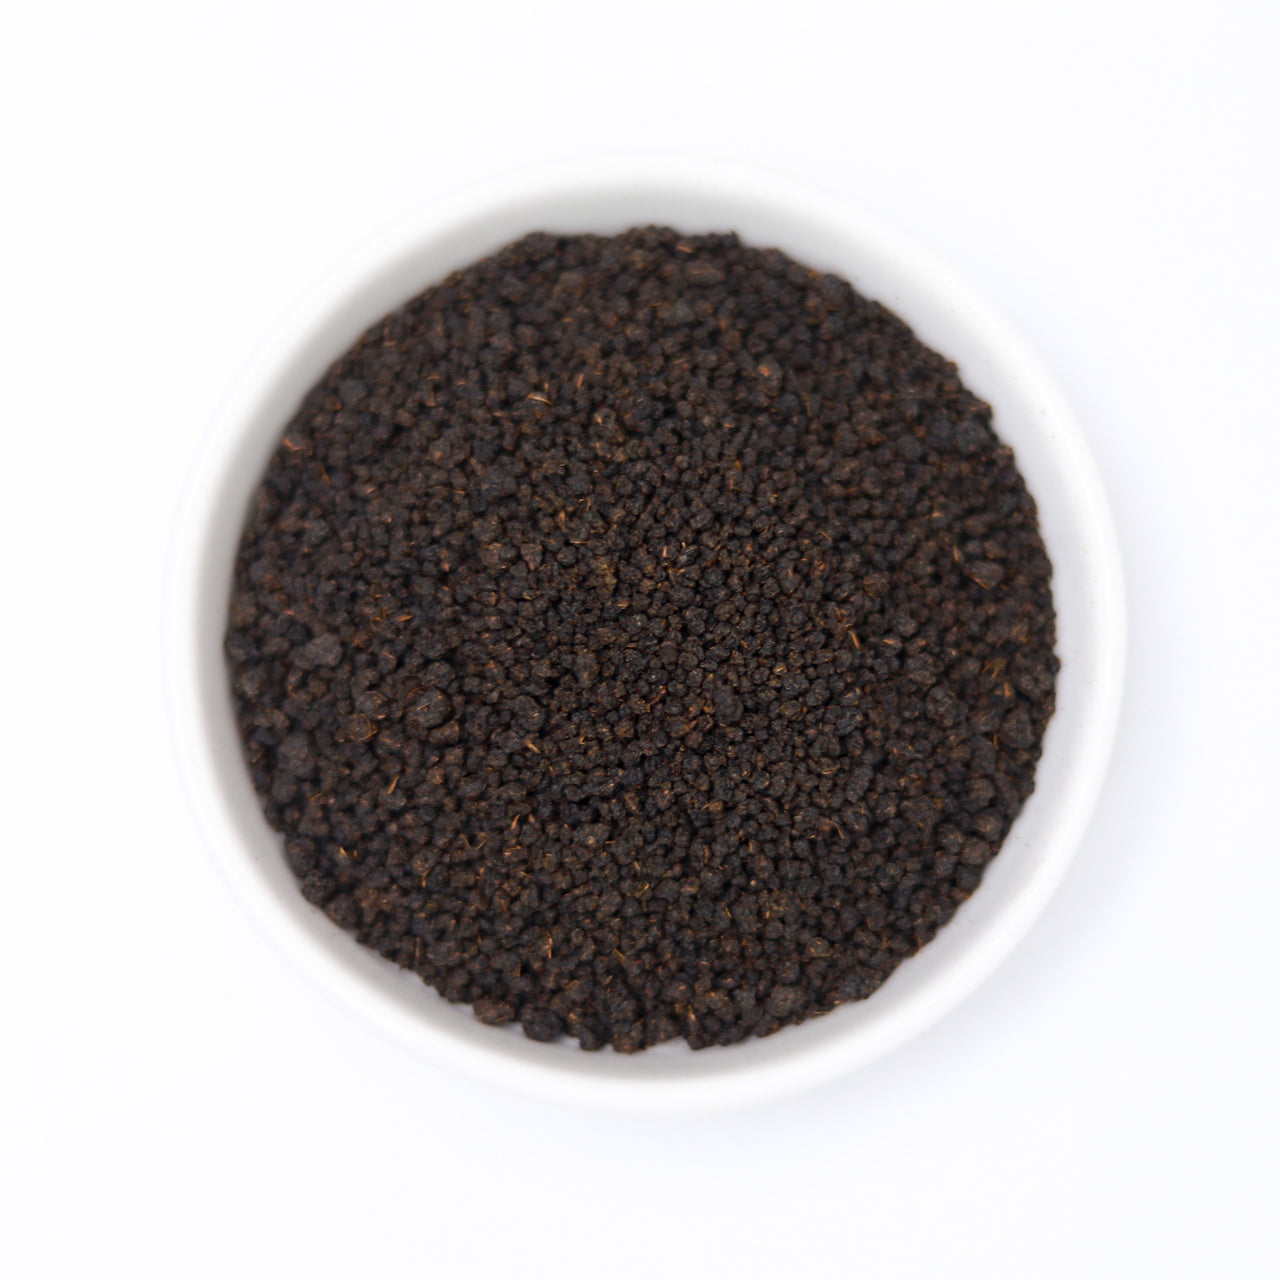 Pure Assam CTC tea pouch- 200gms - saffroncup